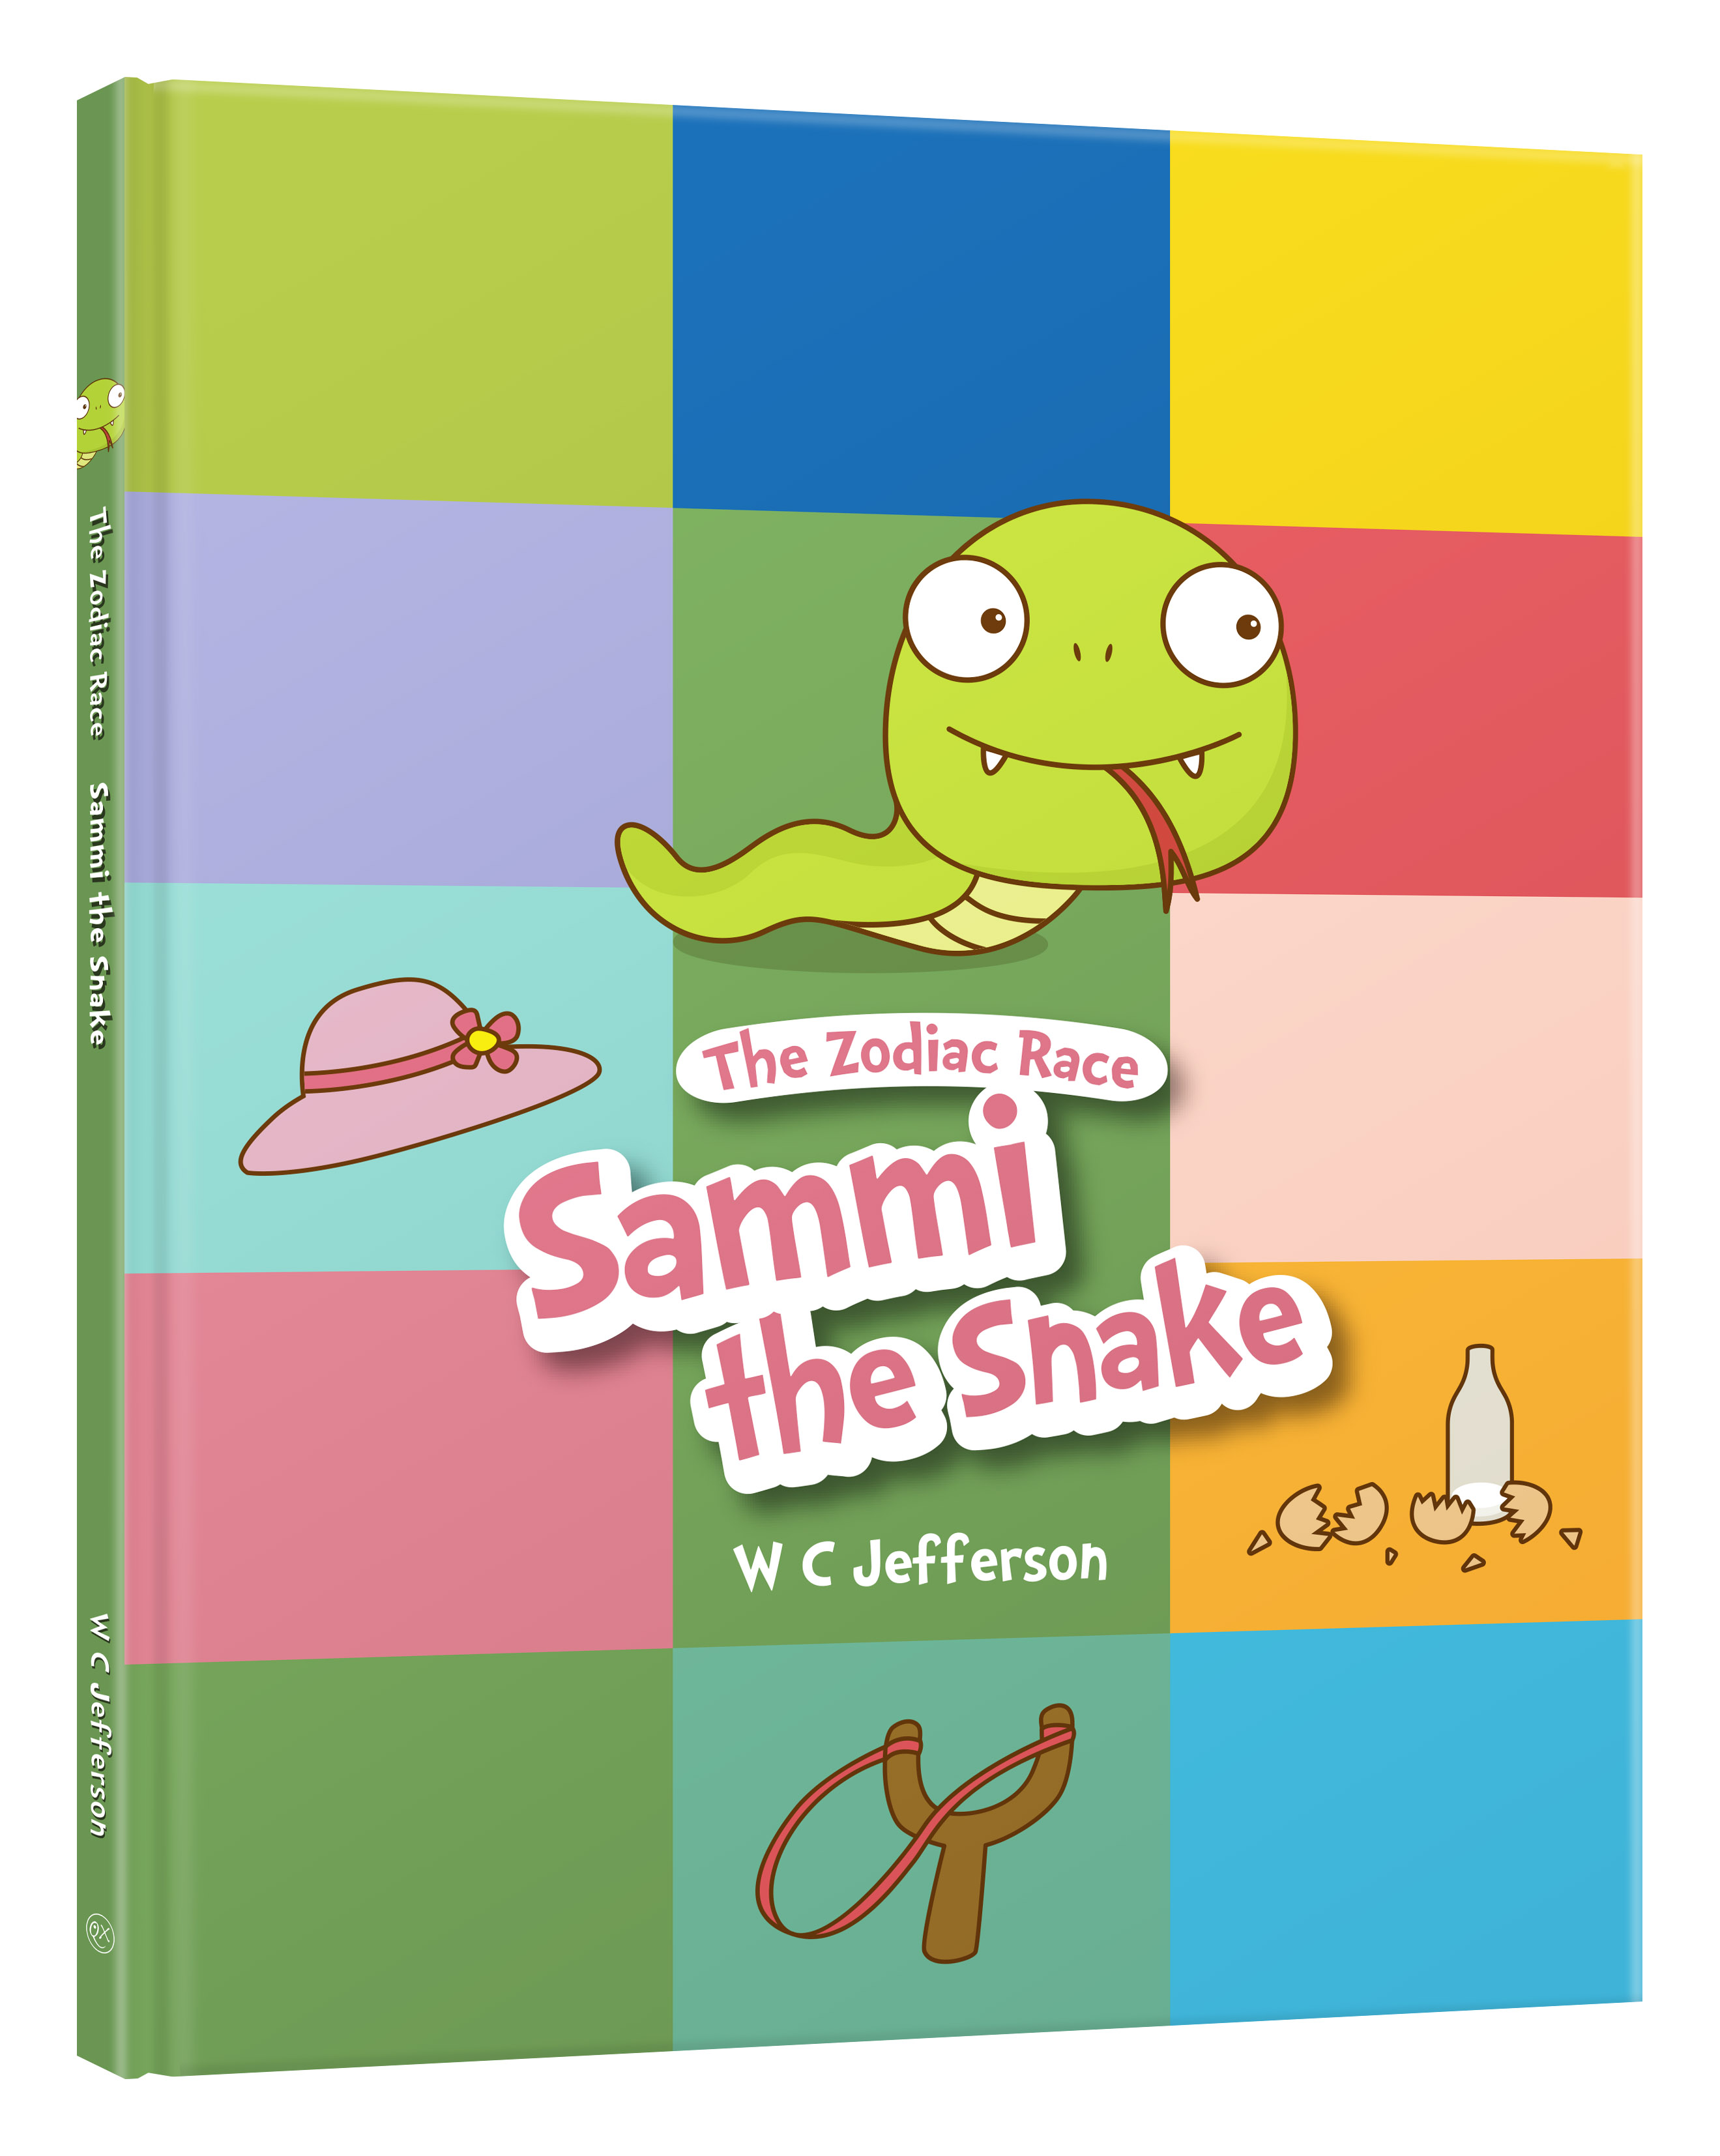 The Zodiac Race: Sammi the Snake